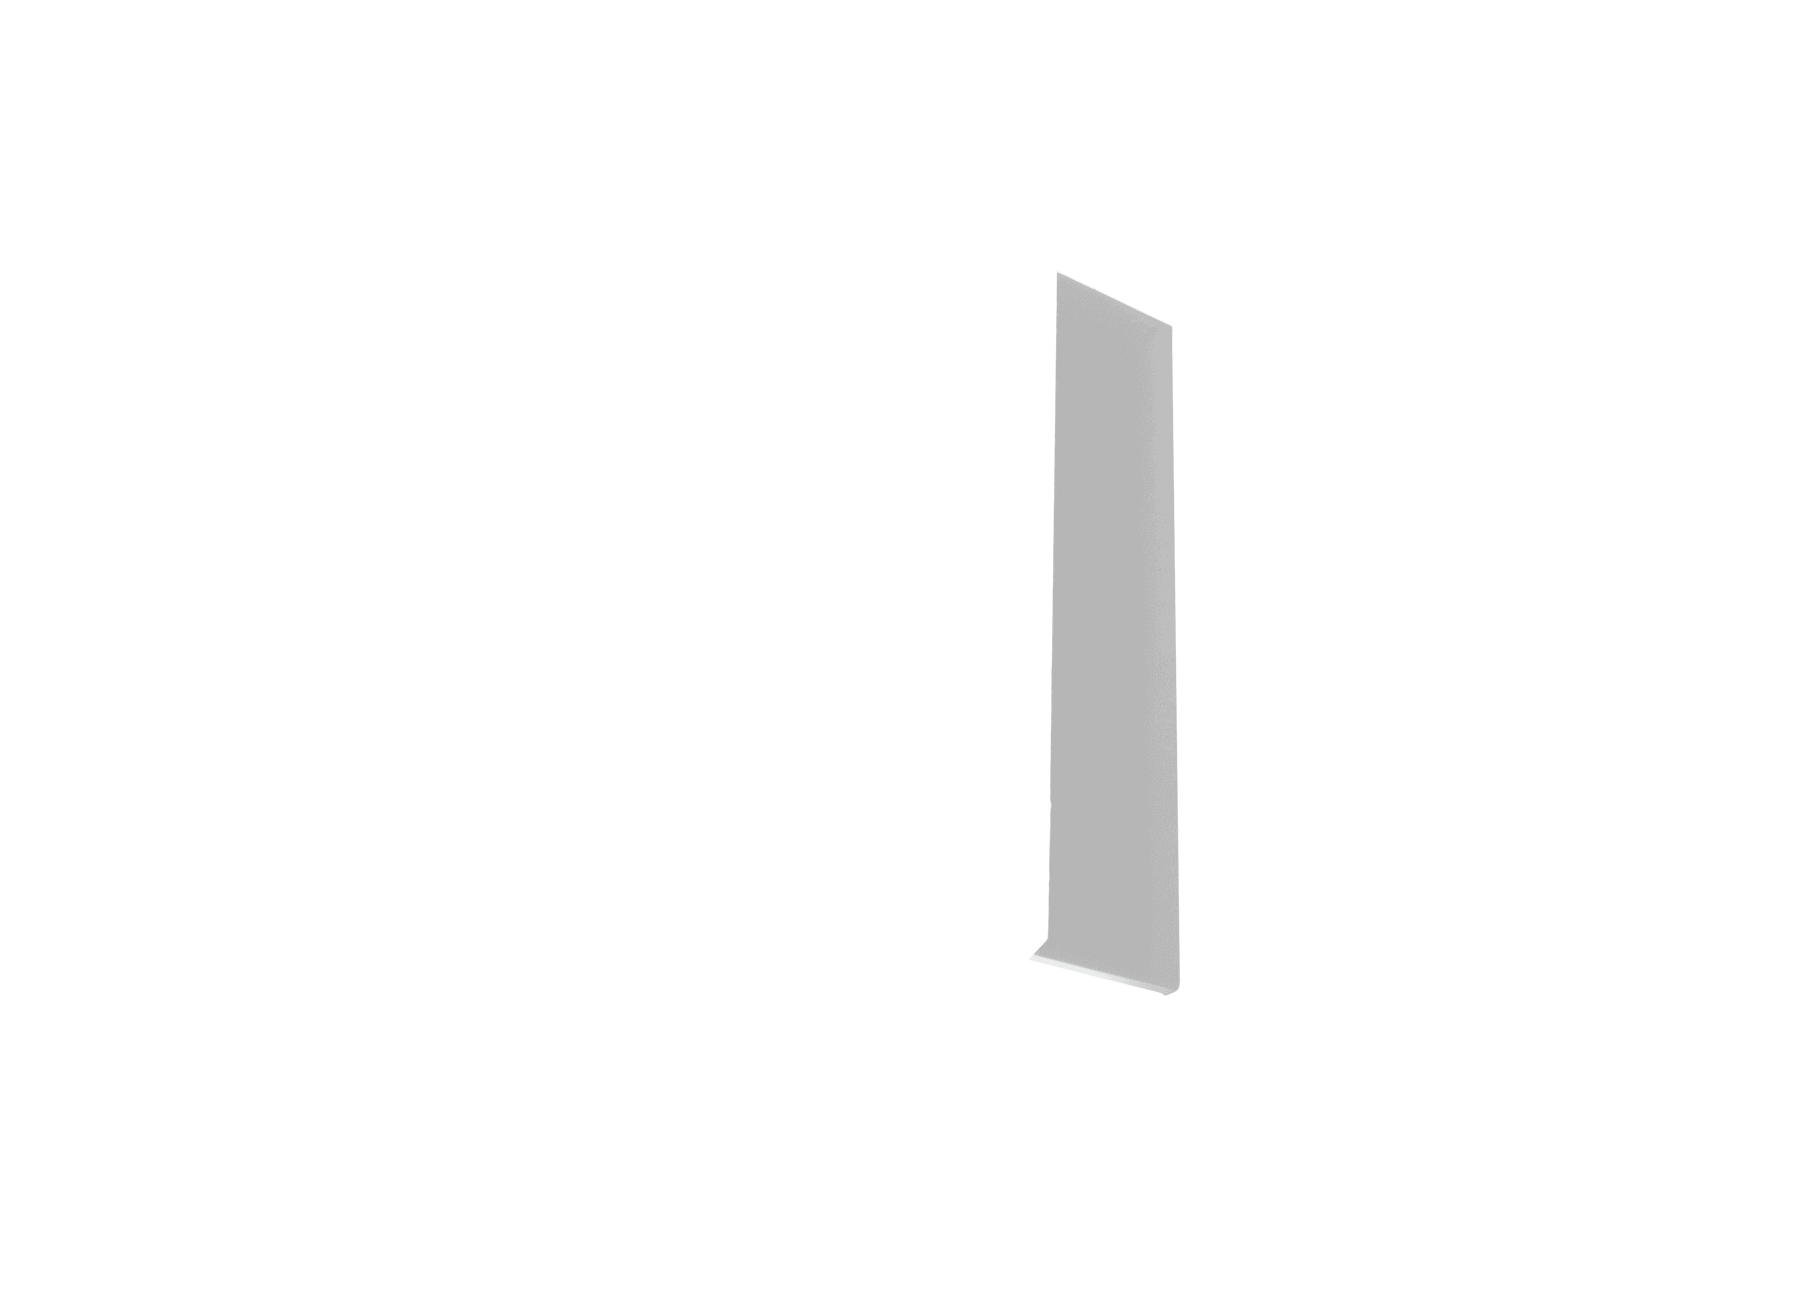 HL2 architectural white (semi-matte) endcaps